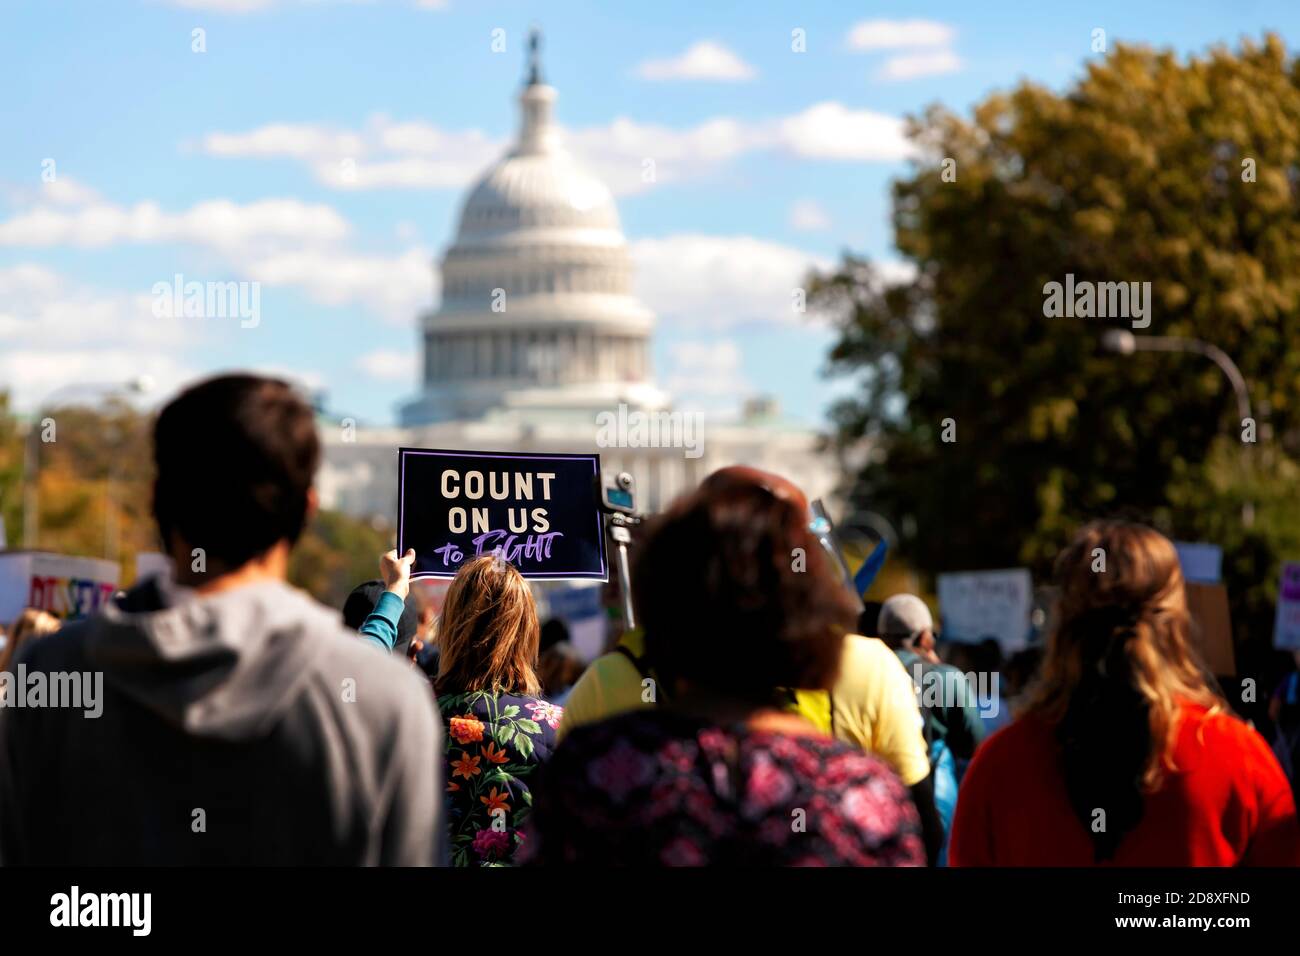 Una mujer lleva una señal que dice "cuente con nosotros", hacia el Capitolio de los EE.UU. Durante la marcha de las mujeres el 17 de octubre de 2020, Washington, DC, EE.UU Foto de stock